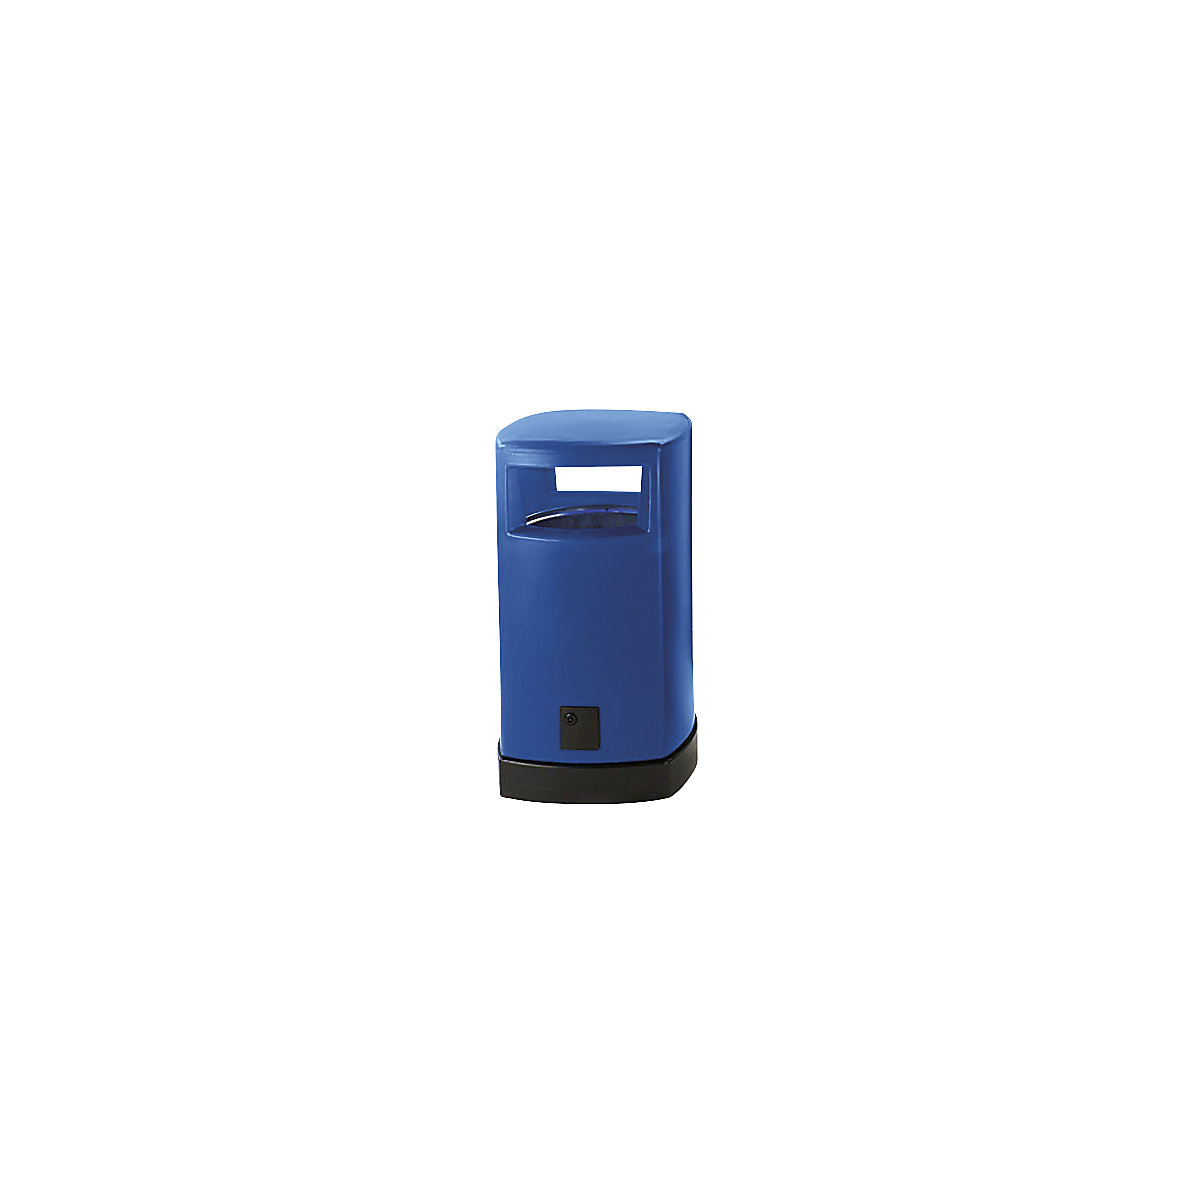 Vanjski plastični spremnik za otpatke, volumen 120 l, ŠxVxD 580 x 1050 x 580 mm, u plavoj boji-7